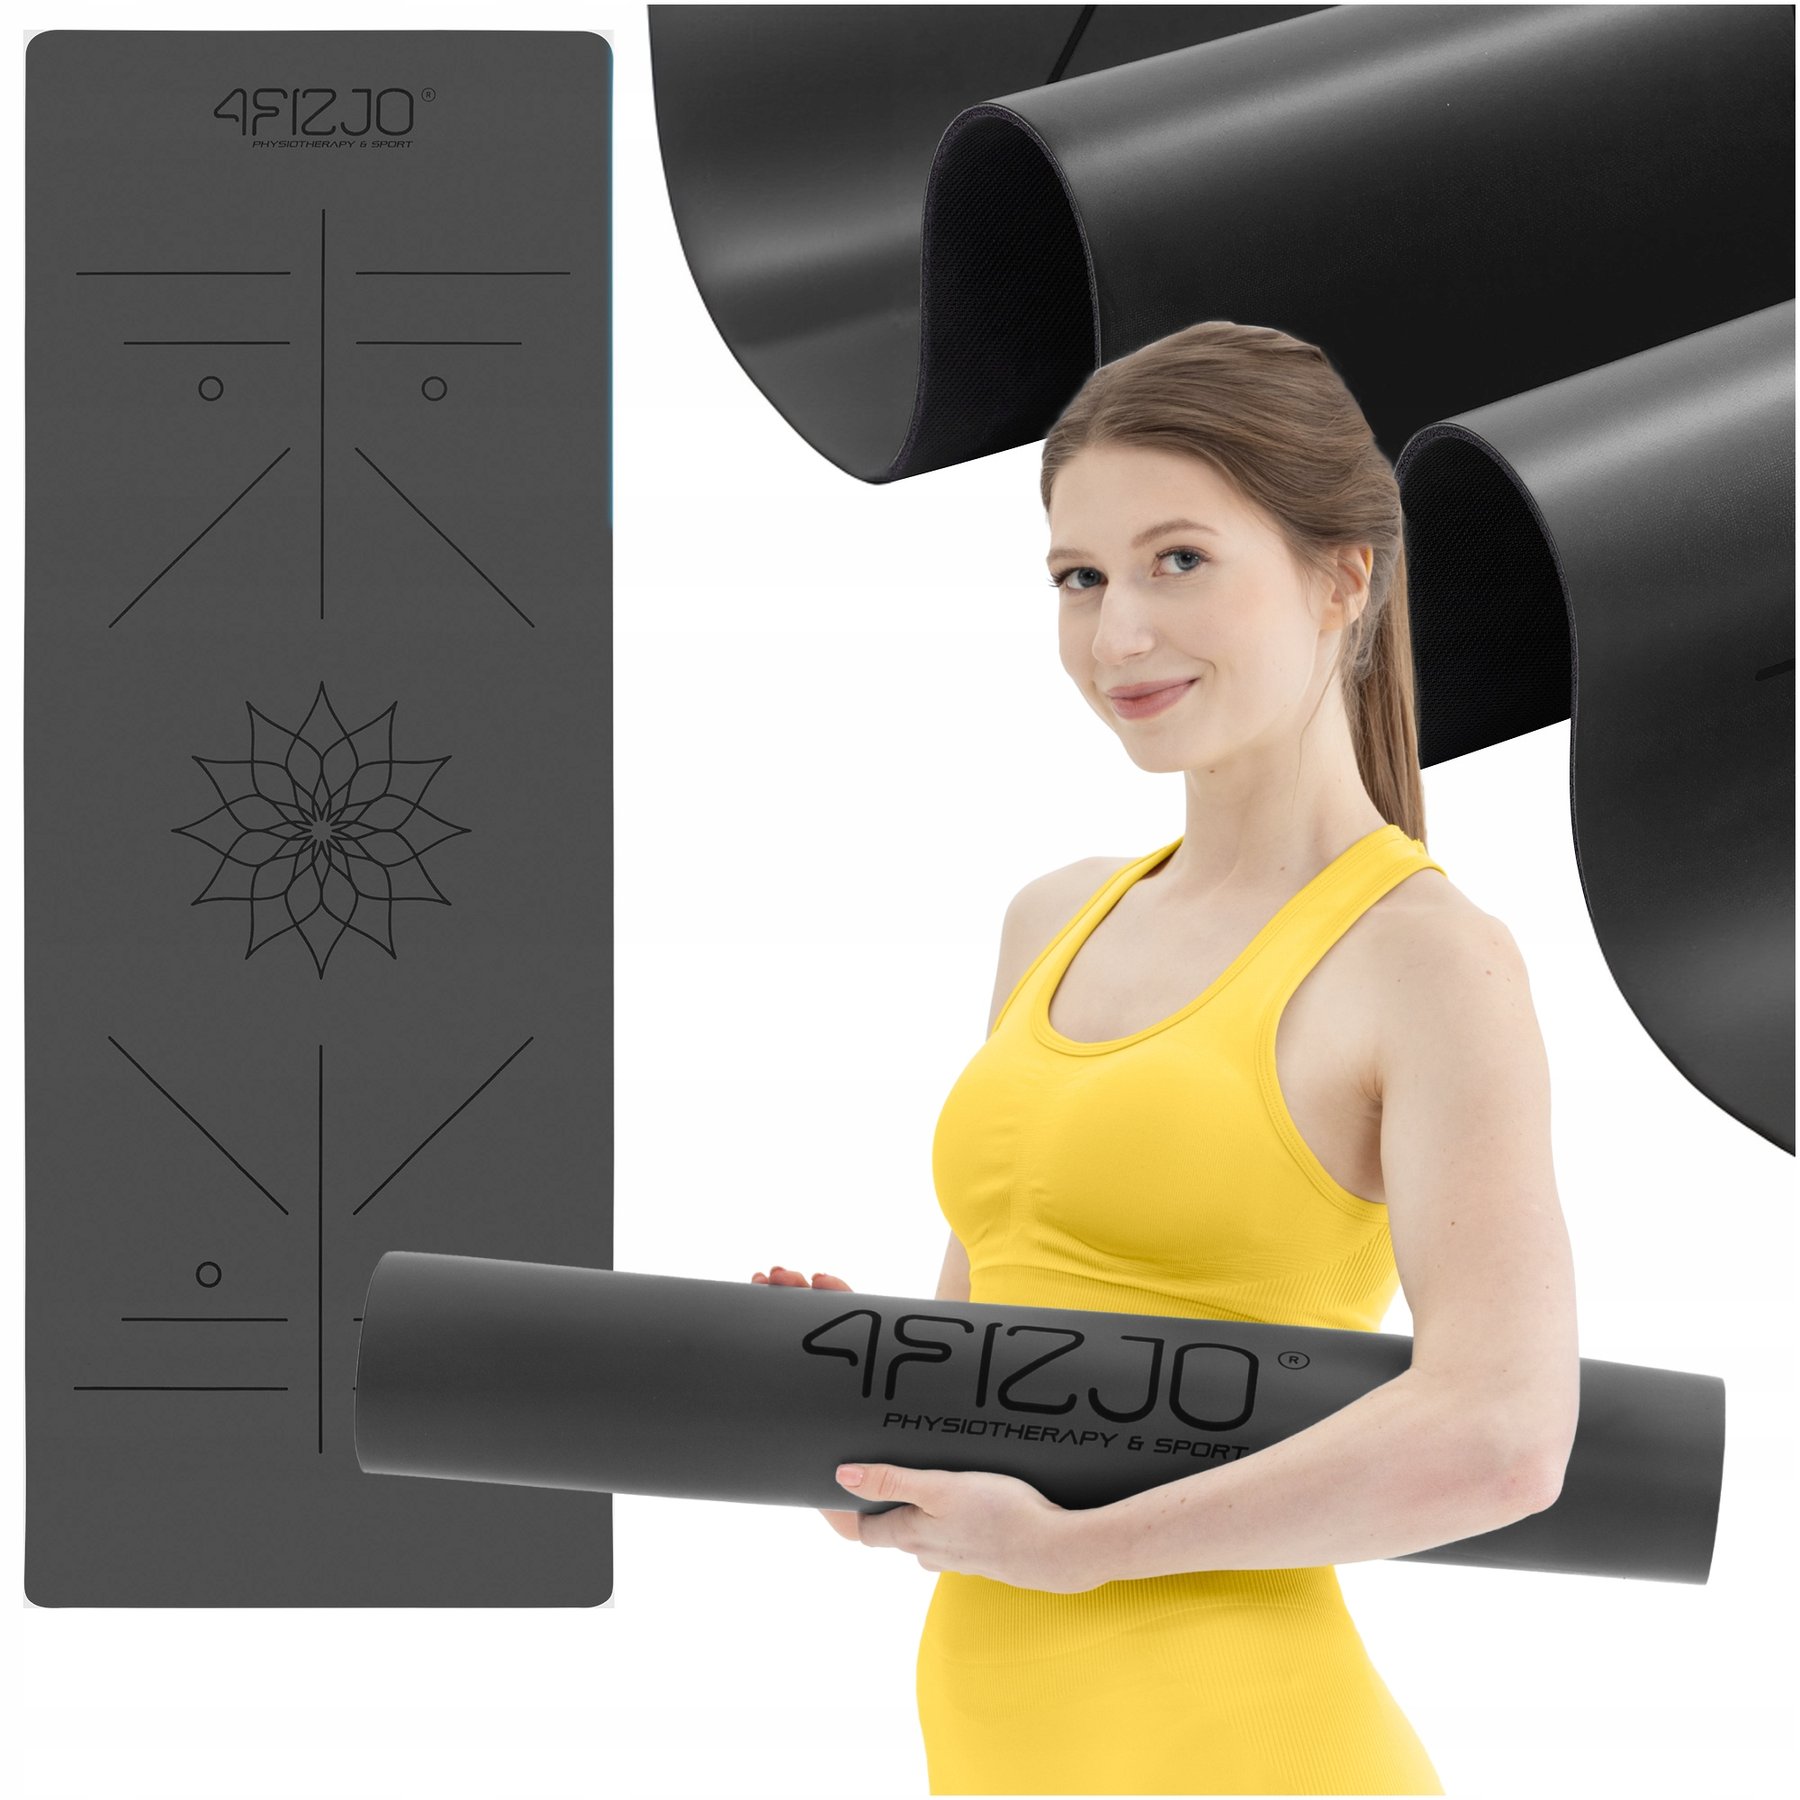 Килимок (мат) спортивний 4FIZJO PU 183 x 68 x 0.4 см для йоги та фітнесу 4FJ0587 Black